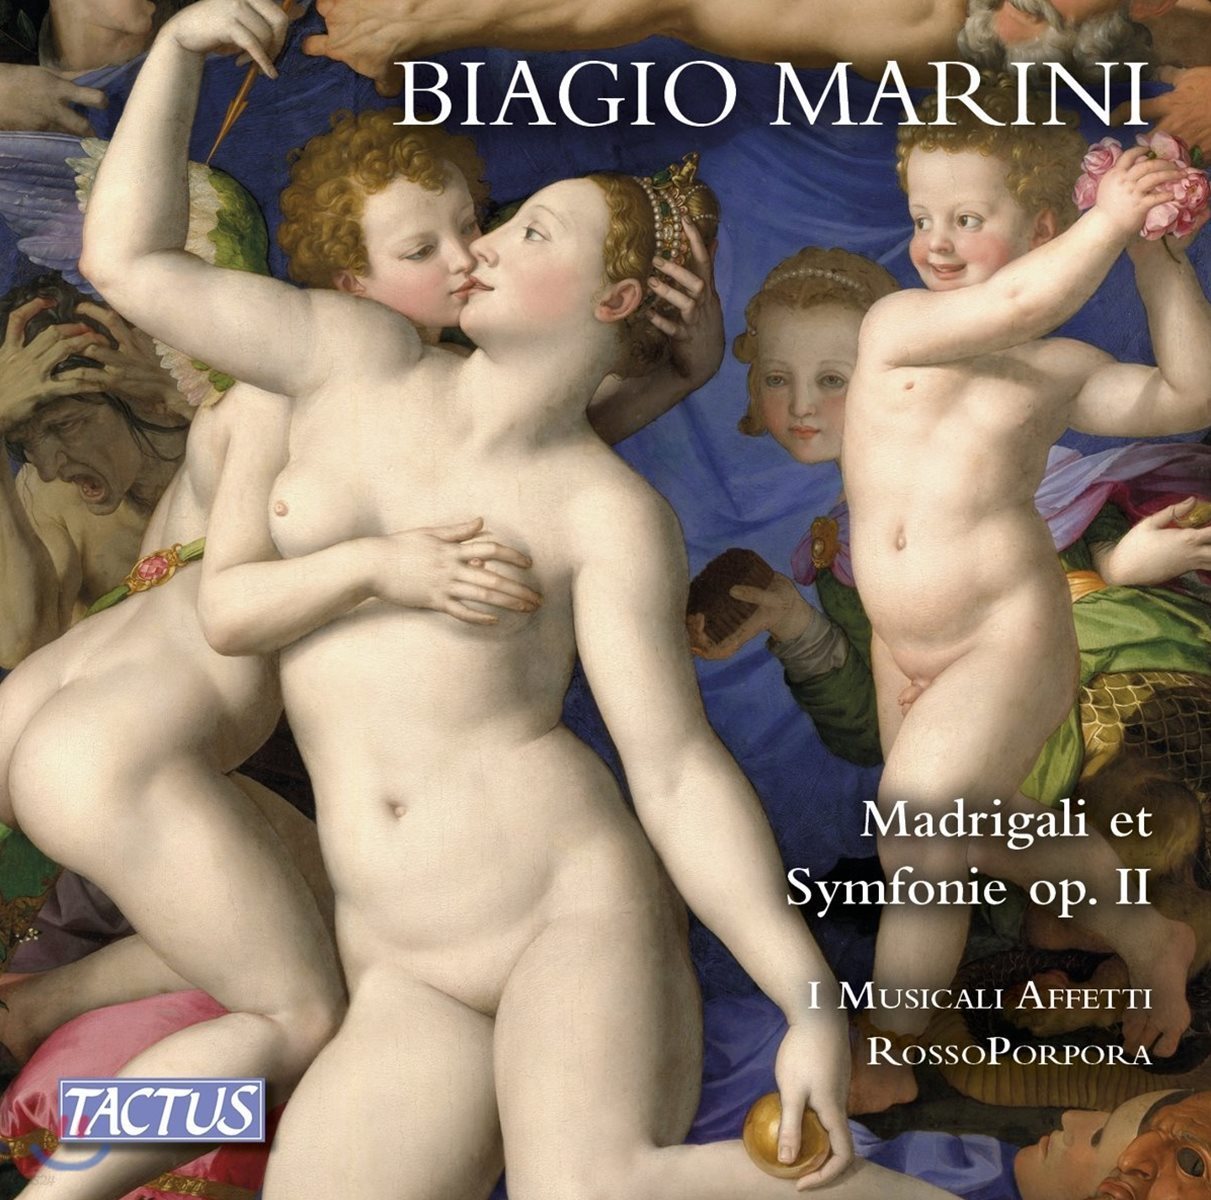 I Musicali Affetti 비아지오 마리니: 마드리갈과 심포니, Op. 2 (1618) - 파비오 미사지아, 이 무지칼리 아페티, 로소포르포라, 발터 테스톨린 (Biagio Marini: Madrigali & Symphonie Op.II)